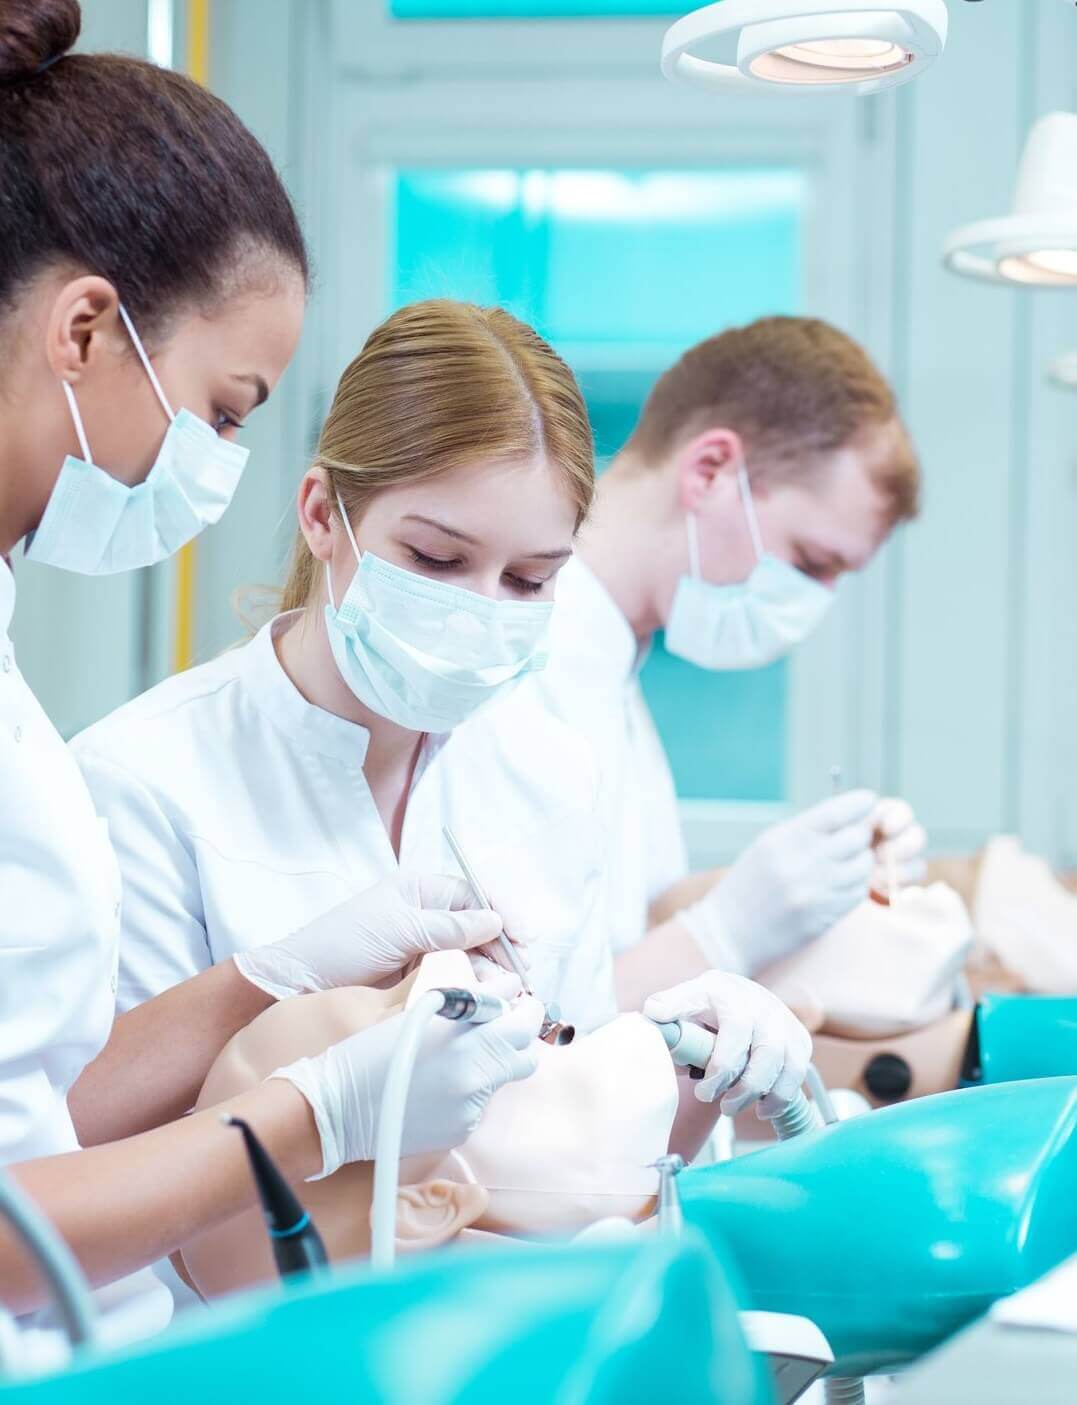 Dental treatments Dentsoftware the best dental practice management software